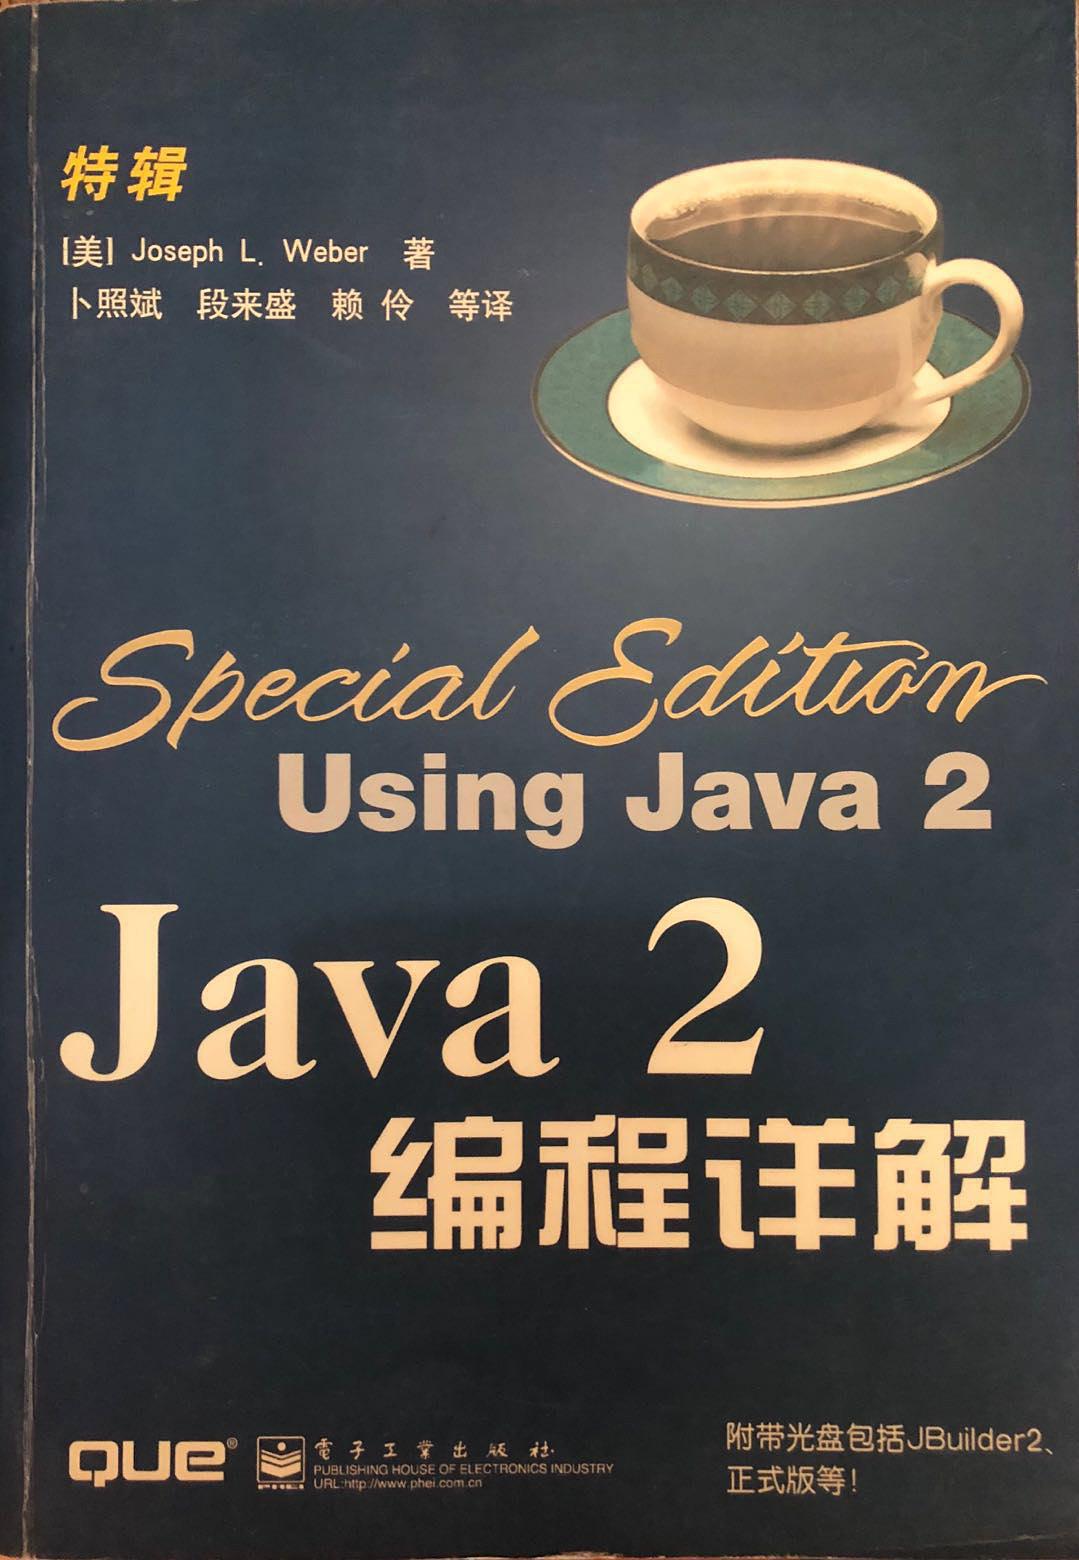 《Java2编程详解》PDF 下载